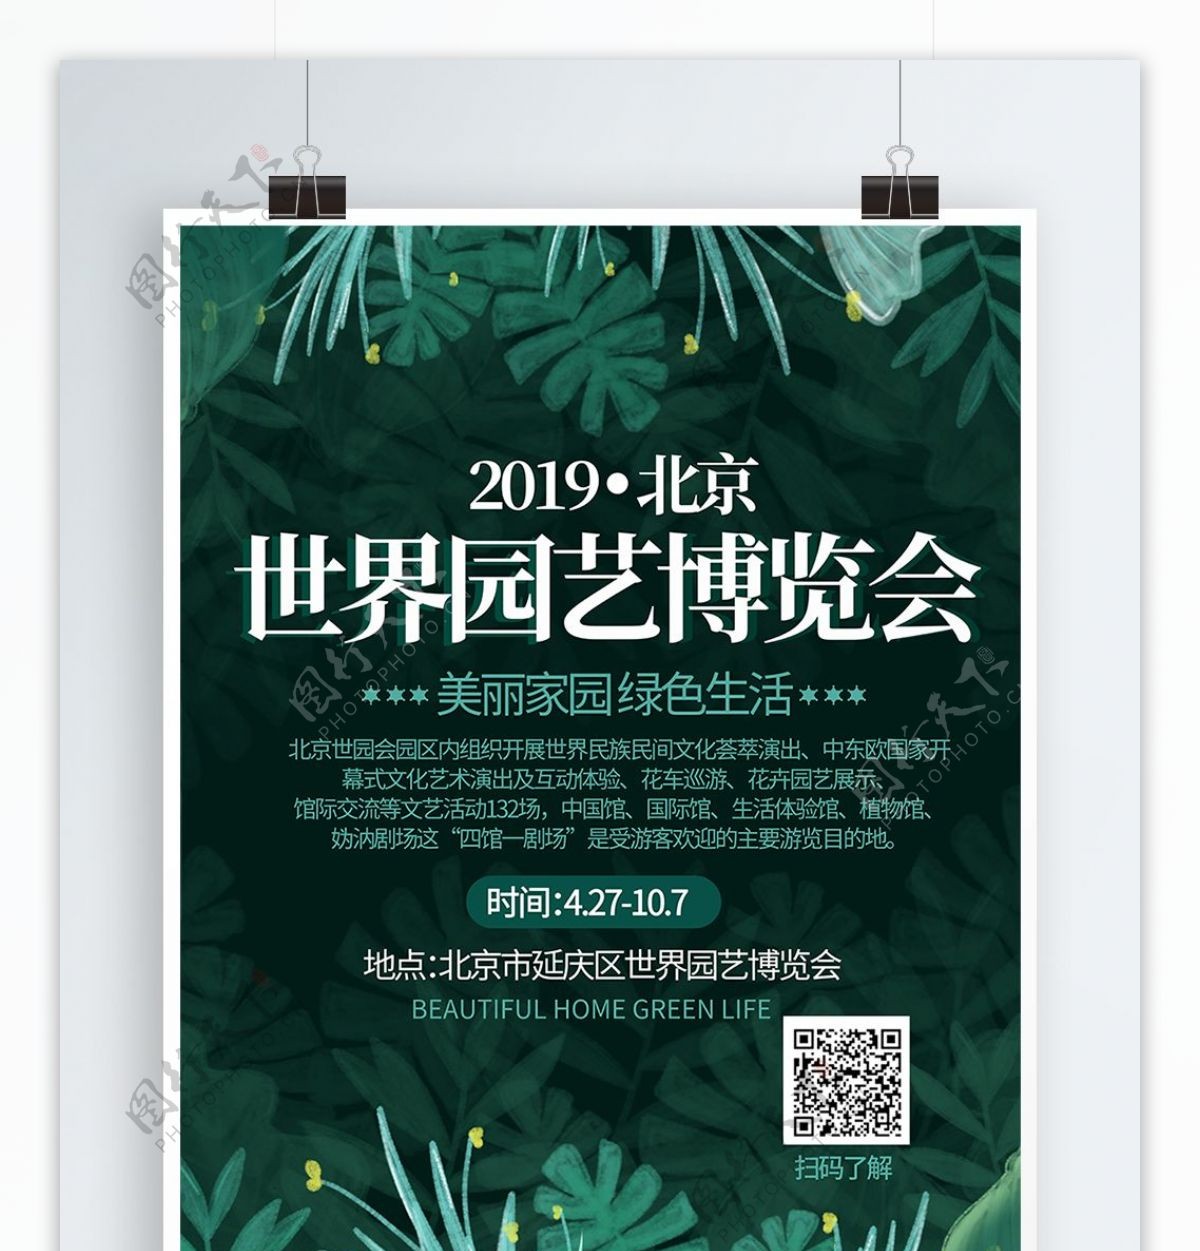 清新简约2019北京世界园艺博览会海报